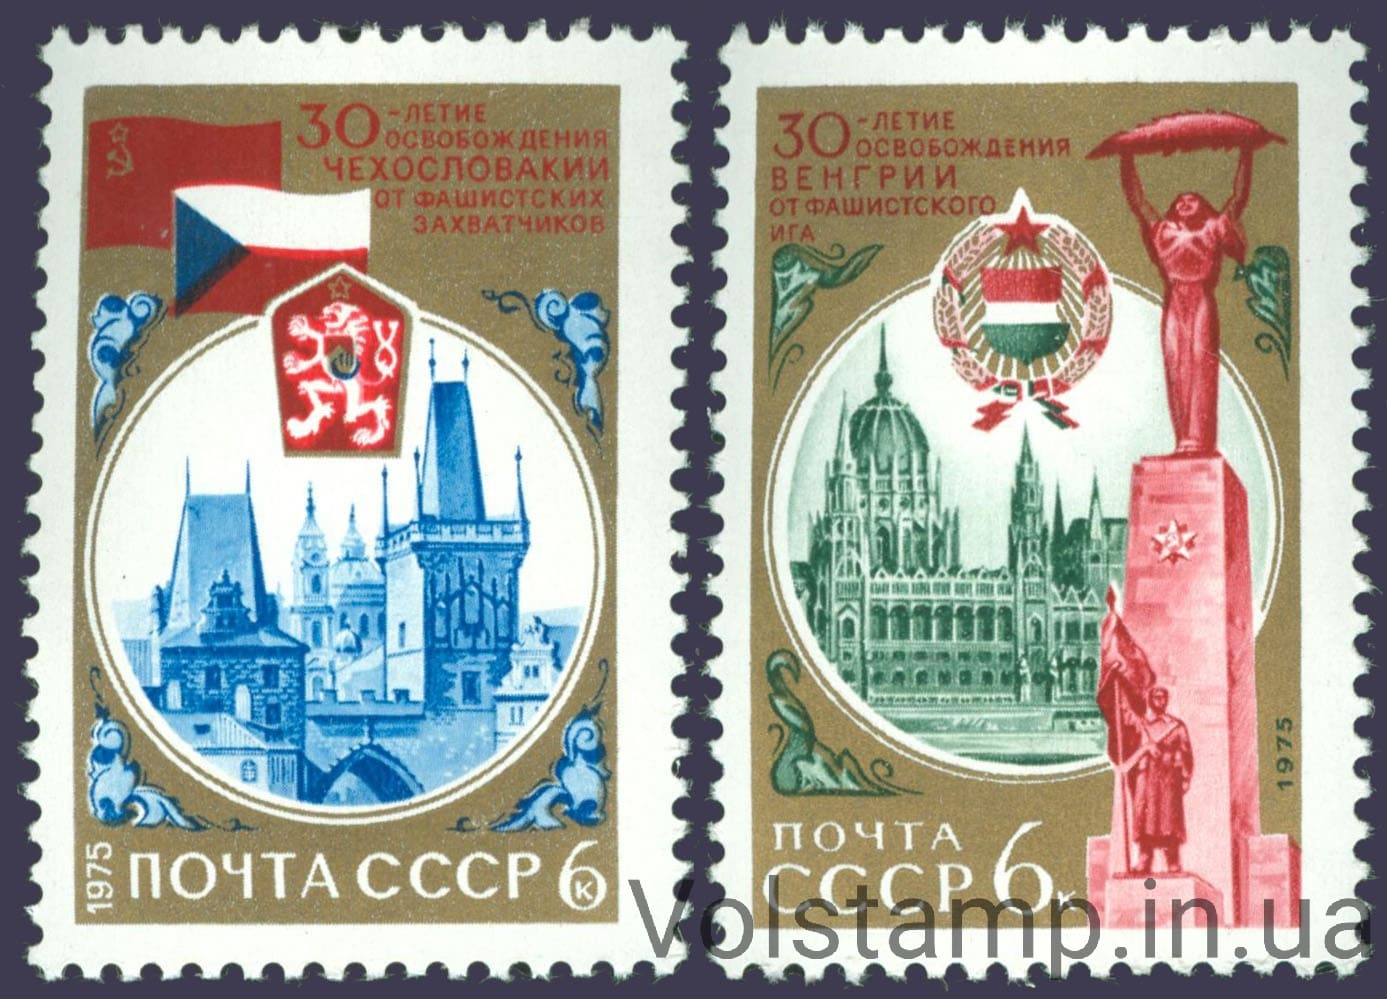 1975 серия марок 30 лет освобождению Венгрии и Чехословакии от фашистских захватчиков №4387-4388